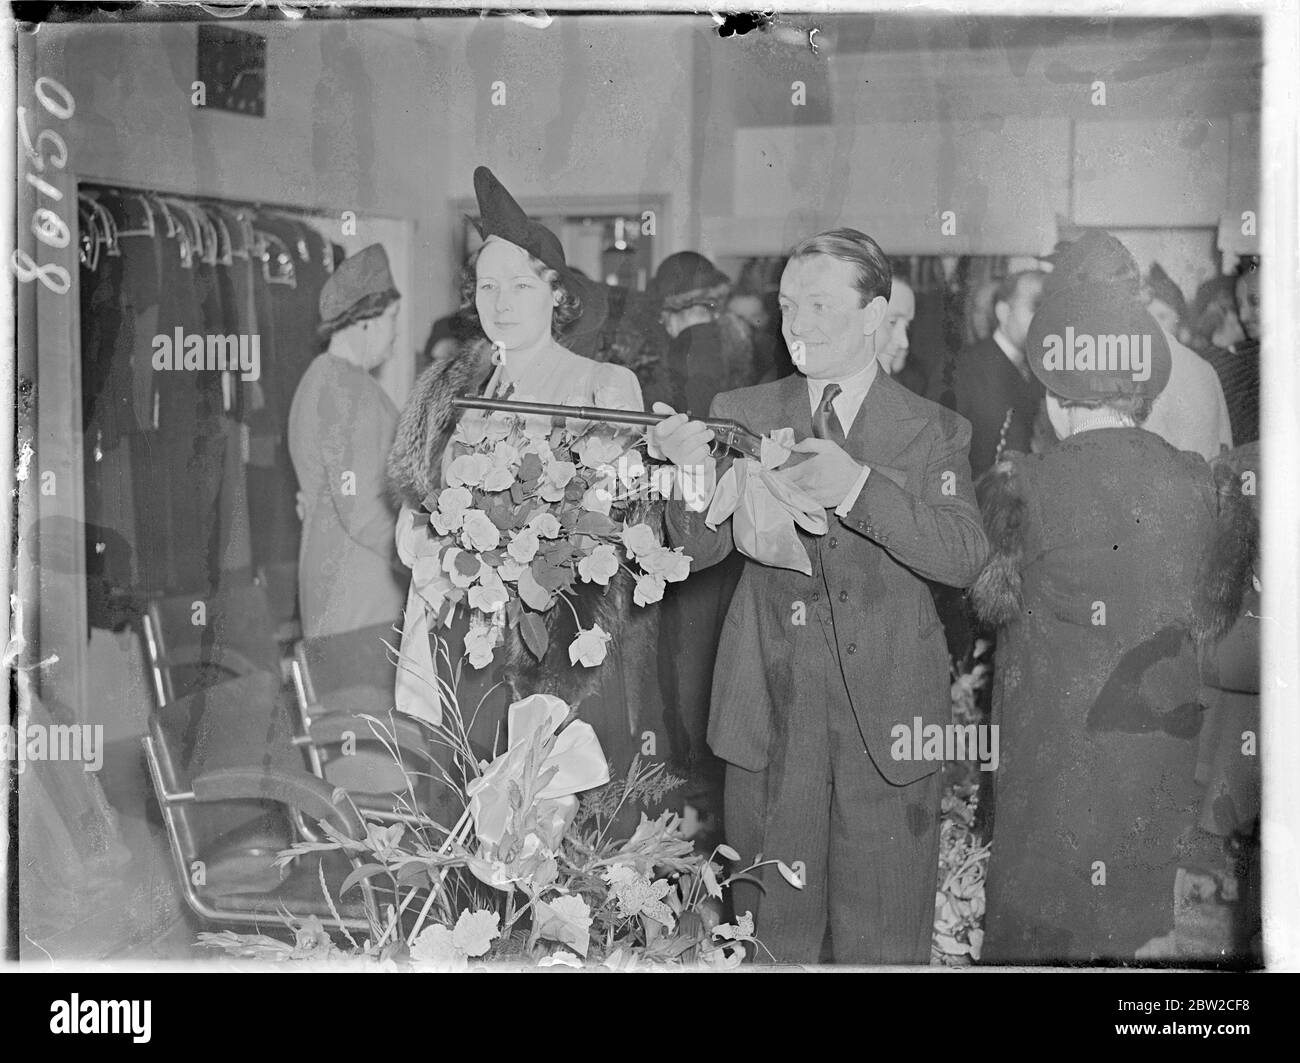 Bobby Howes, der Komiker, feuerte eine Waffe, um offiziell den neuen Goorwitch-Laden in der Oxford Street, London, zu eröffnen. Foto zeigt Bobby Howes, der die Waffe schießt. Er wird von seiner Frau begleitet. 19. Oktober 1938 Stockfoto